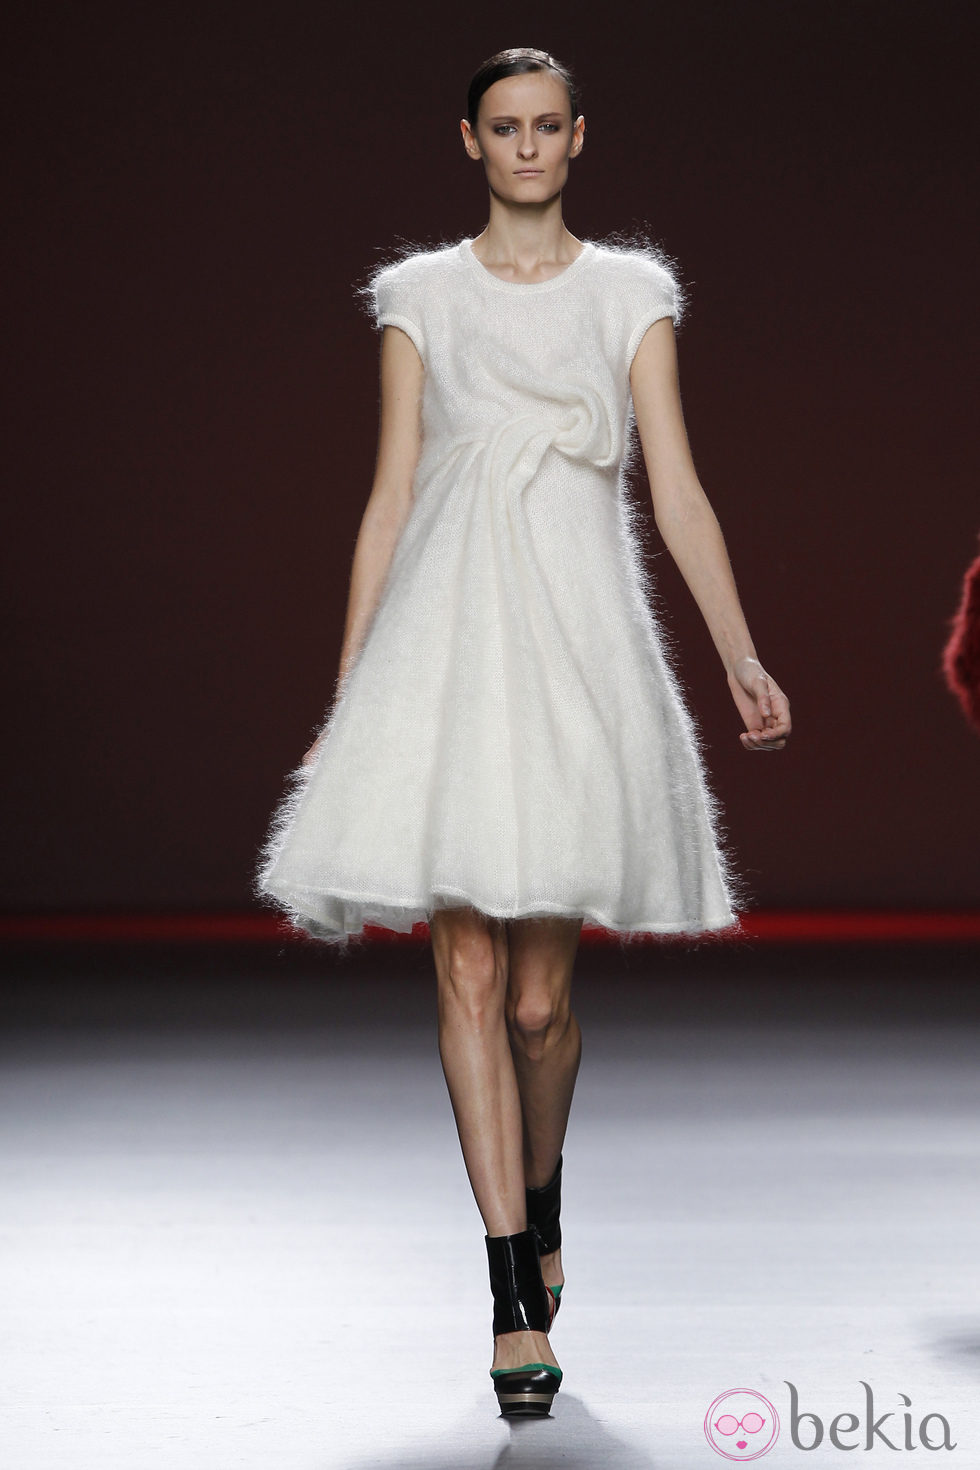 Vestido de manga corta en color blanco roto de Amaya Arzuaga en Fashion Week Madrid